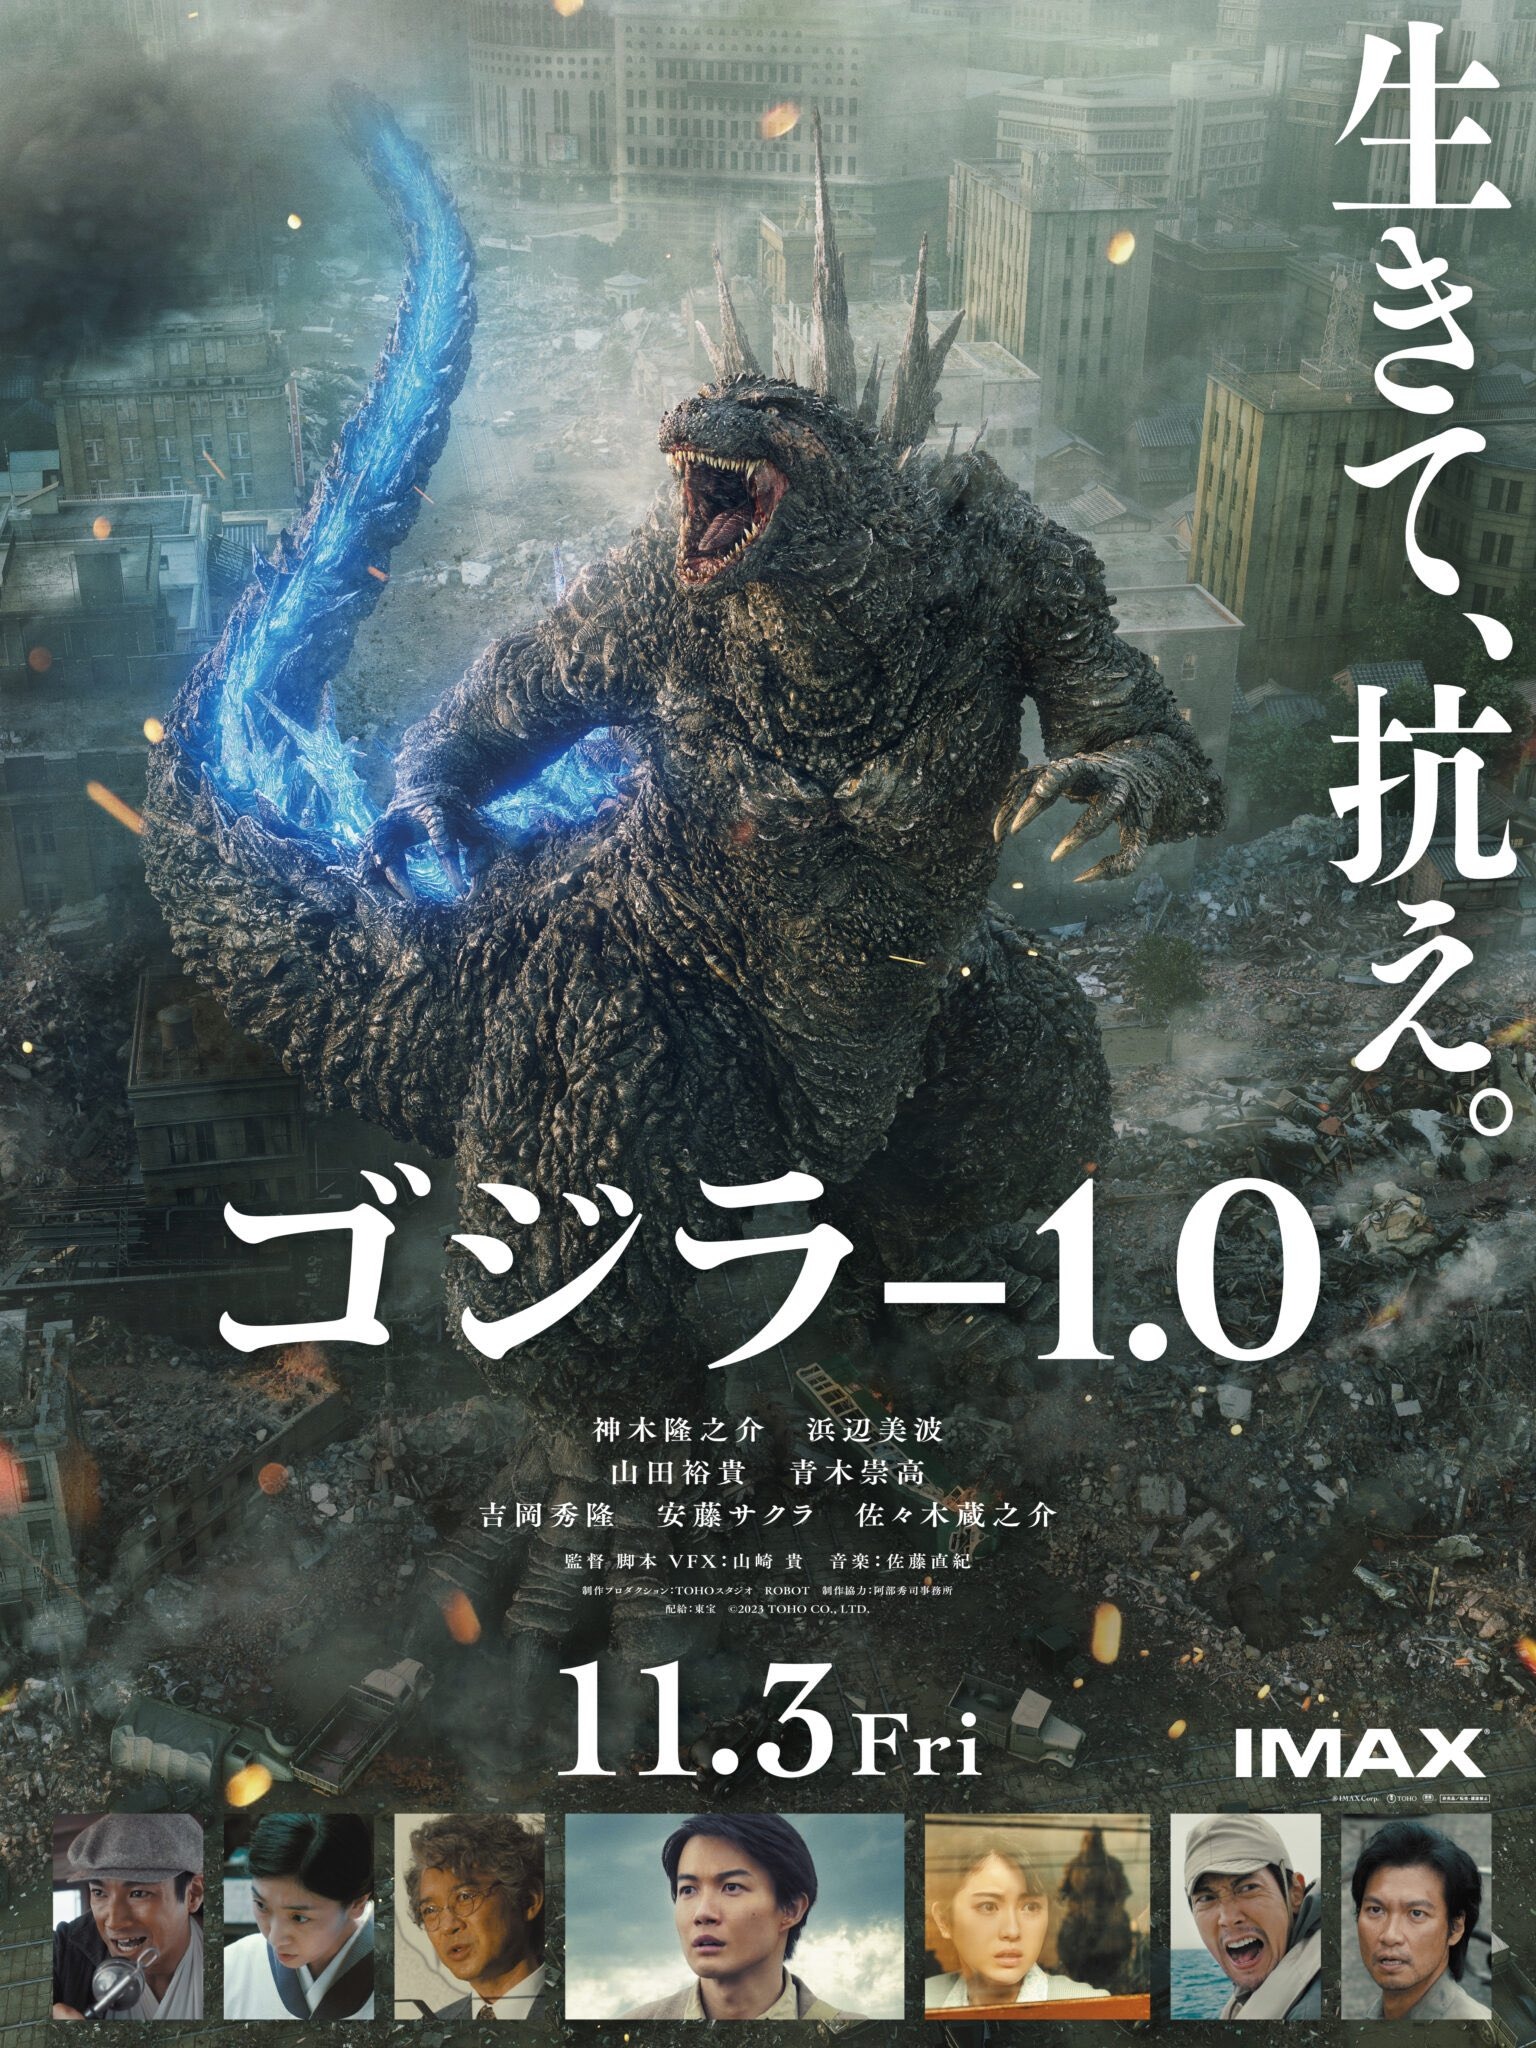 Mega Sized Movie Poster Image for Godzilla: Minus One (#7 of 11)